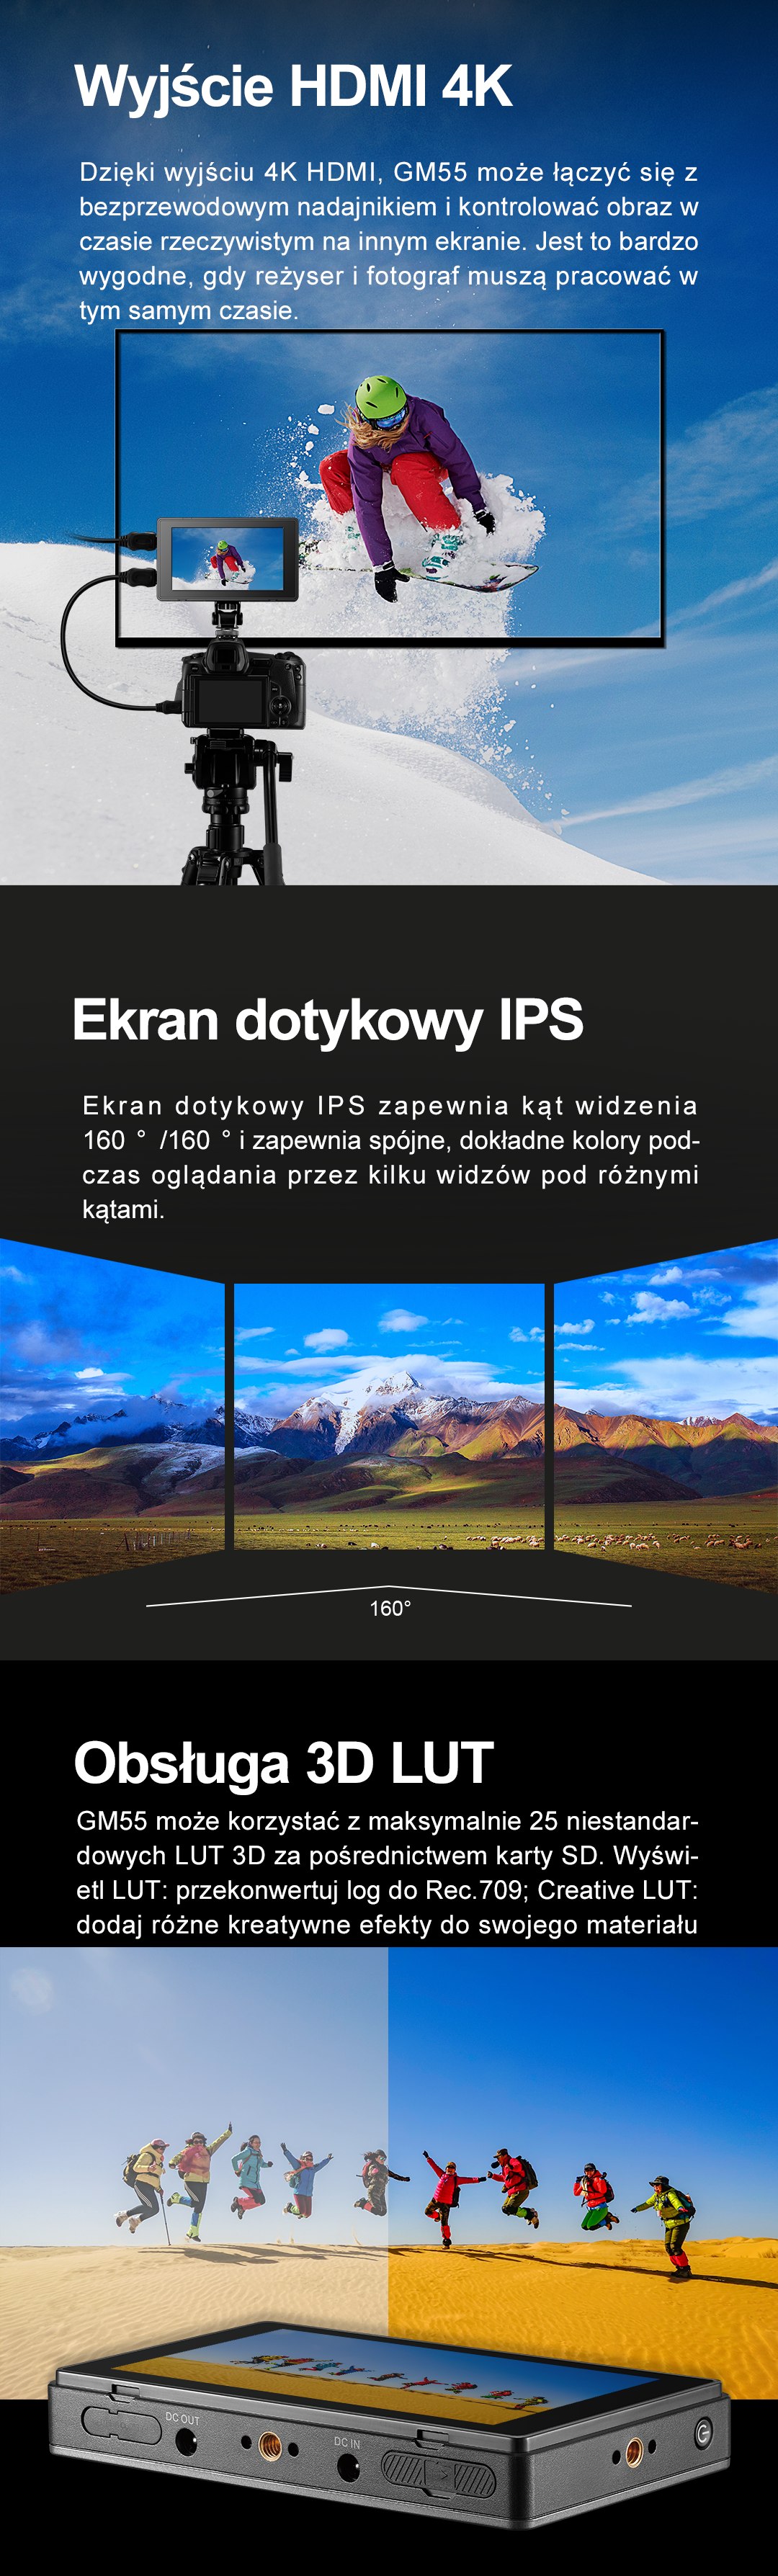 Wyjście HDMI 4K Ekran dotykowy IPS Obsługa 3D LUT